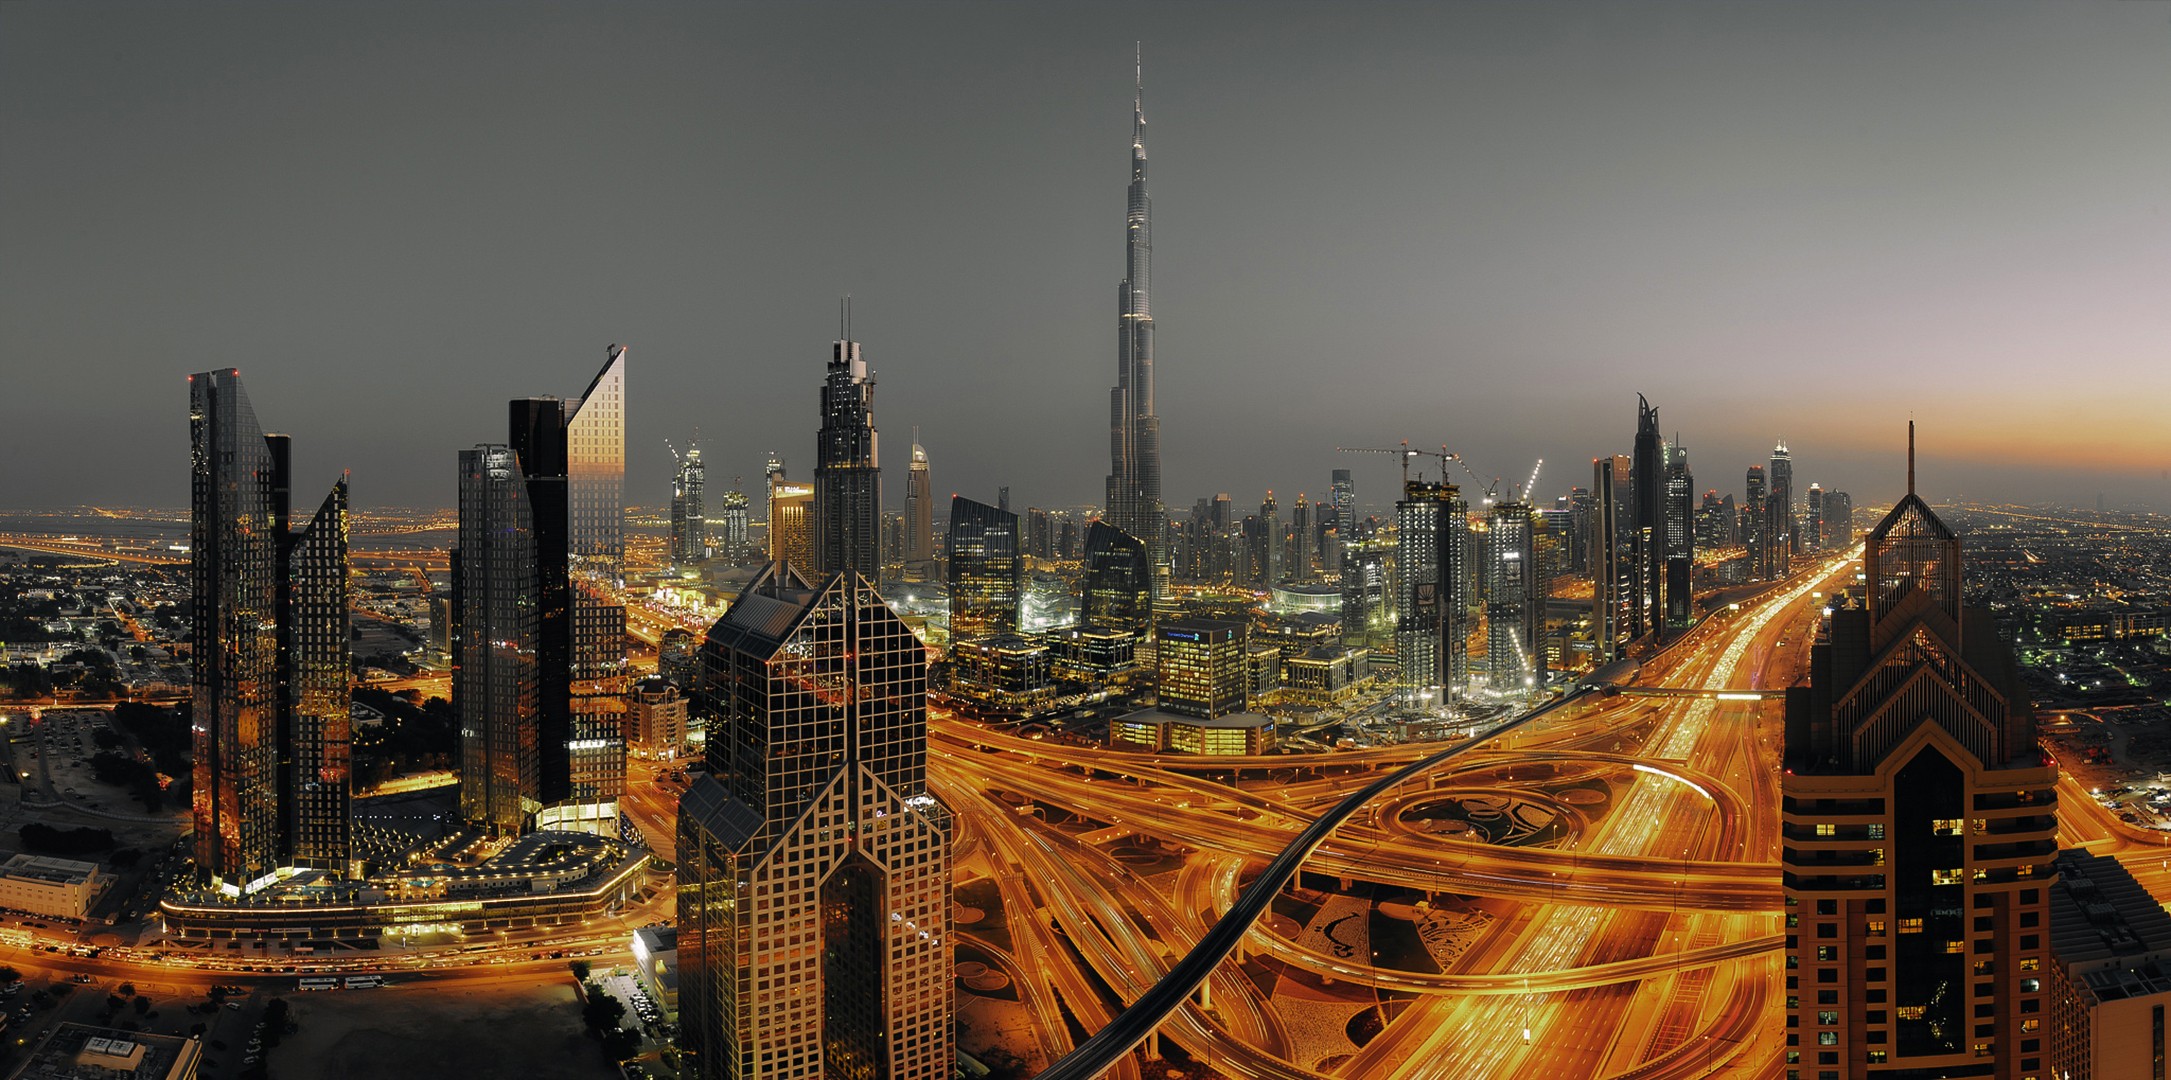 Cityscape Lights Long Exposure Dubai Burj Khalifa 2171x1080